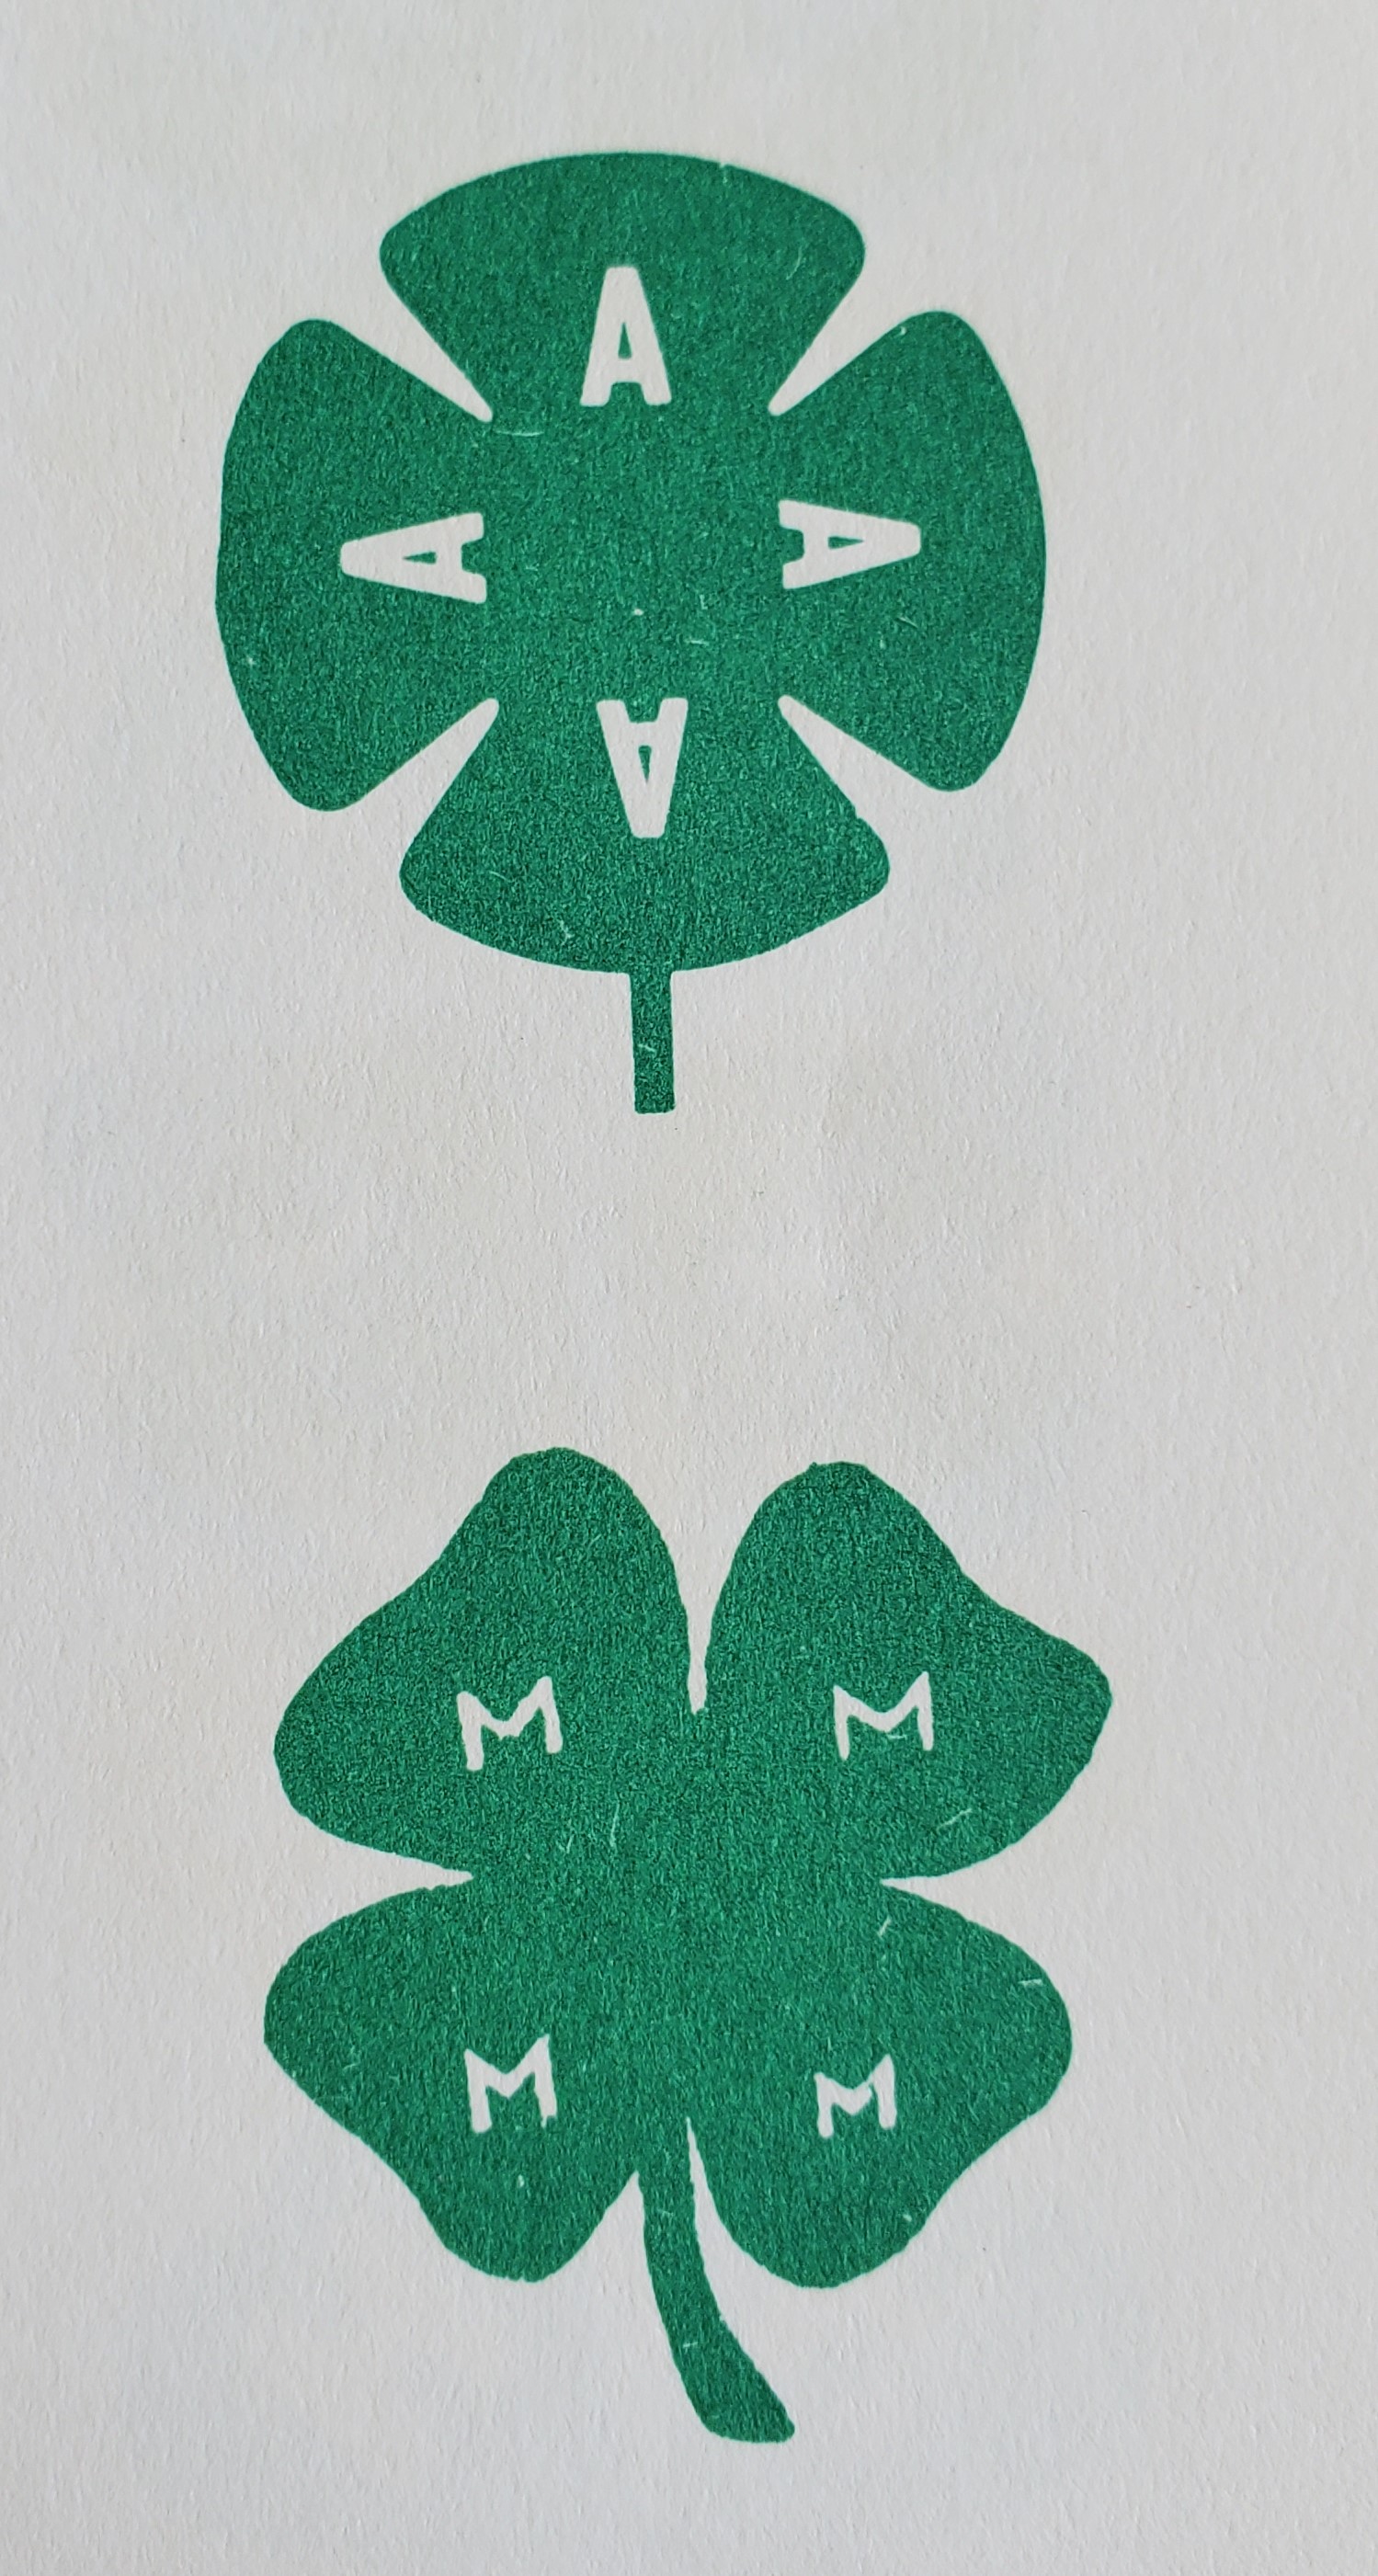 1954 Logos